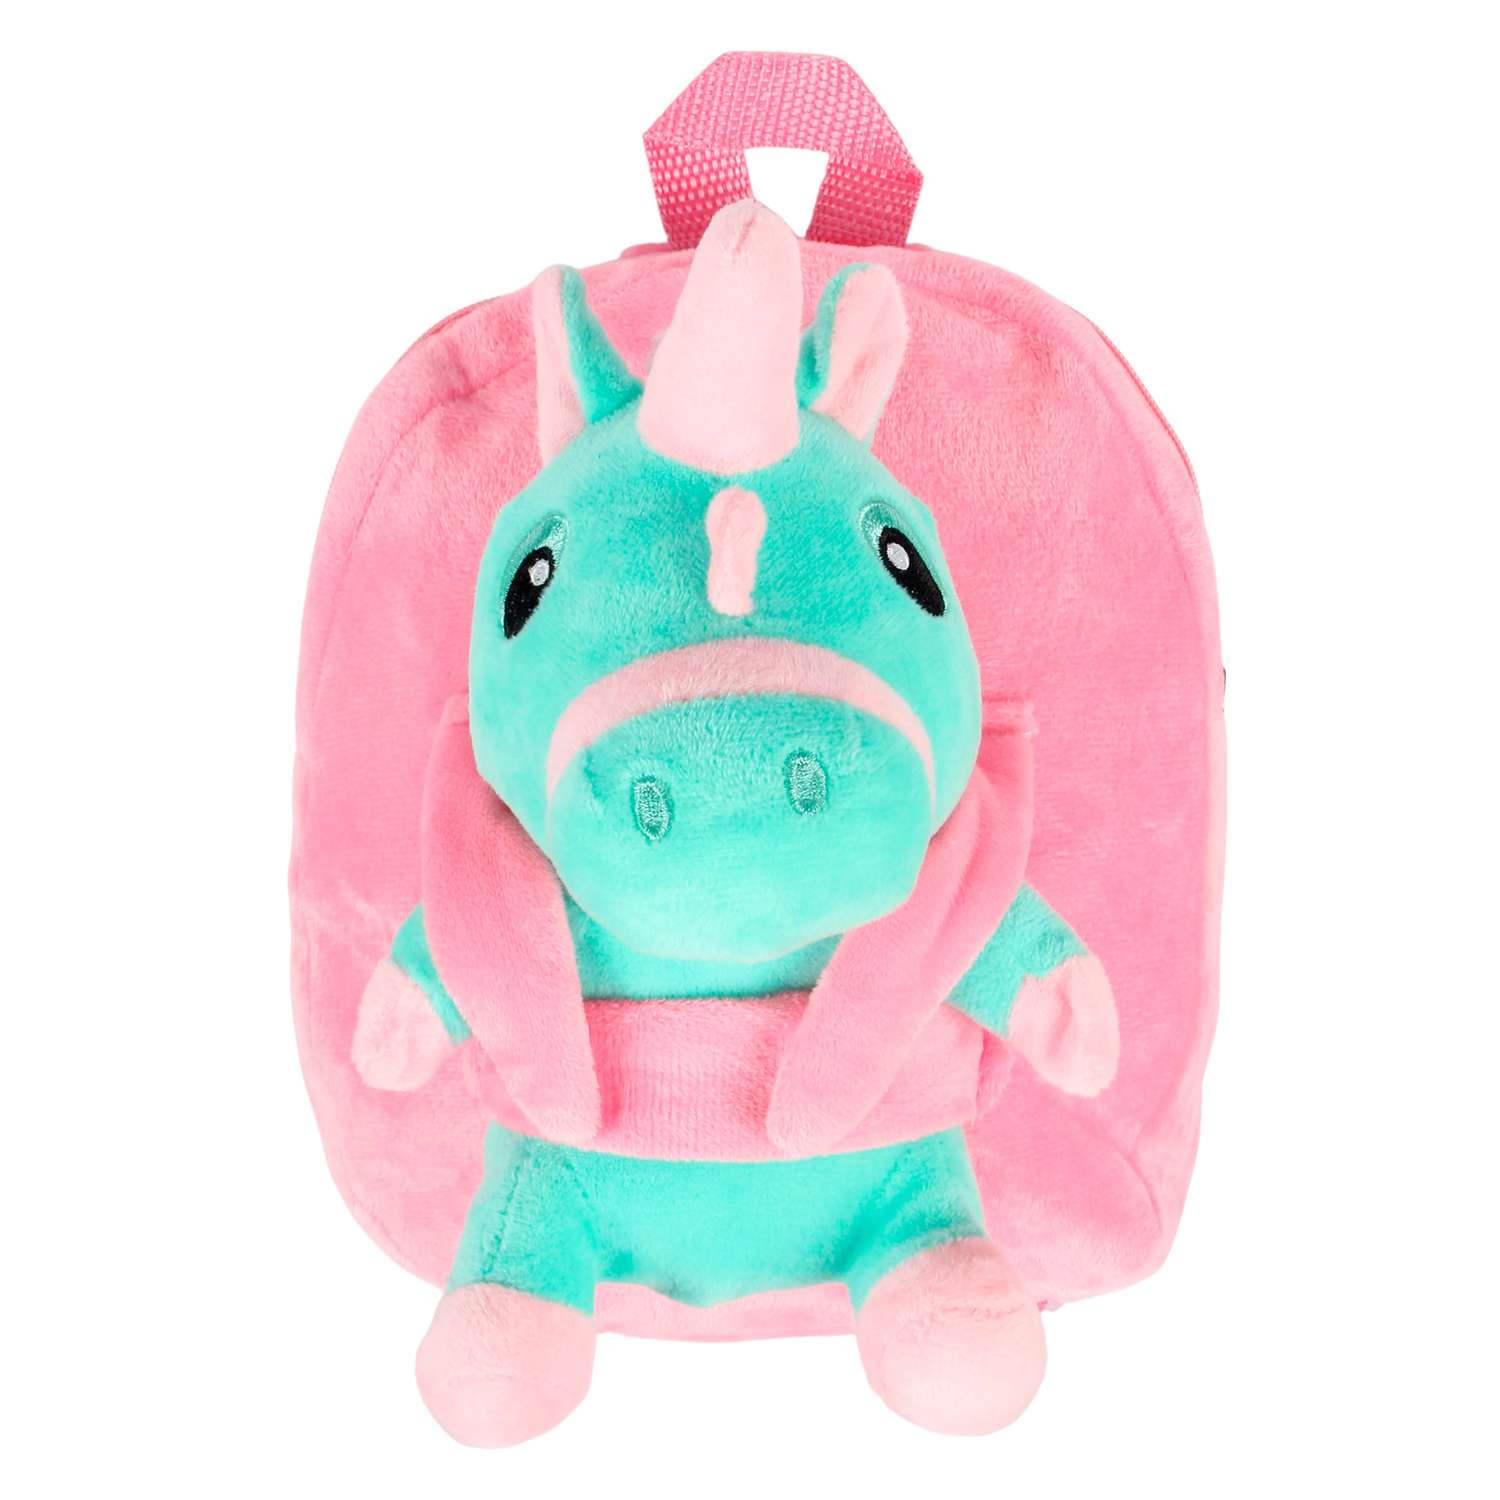 Рюкзак с игрушкой Little Mania розовый Дракоша светло-зеленый - фото 1